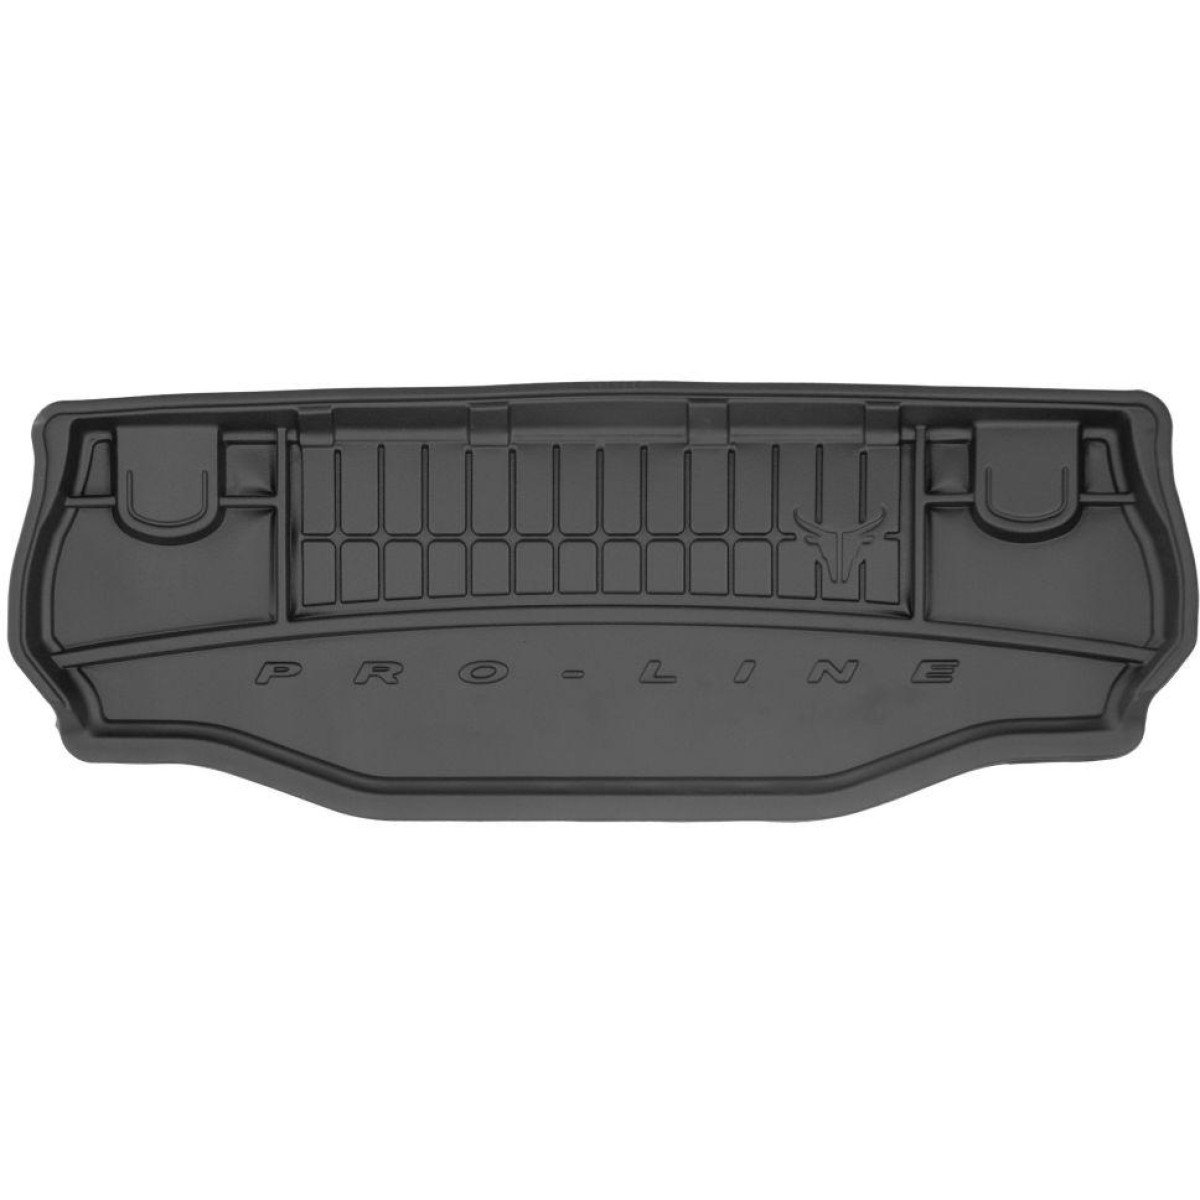 Guminis bagažinės kilimėlis Proline Jeep Wrangler III (JK) 2006-2018m. / behind 2nd row of seats / does not fit unlimited version / paaukštintais kraštais